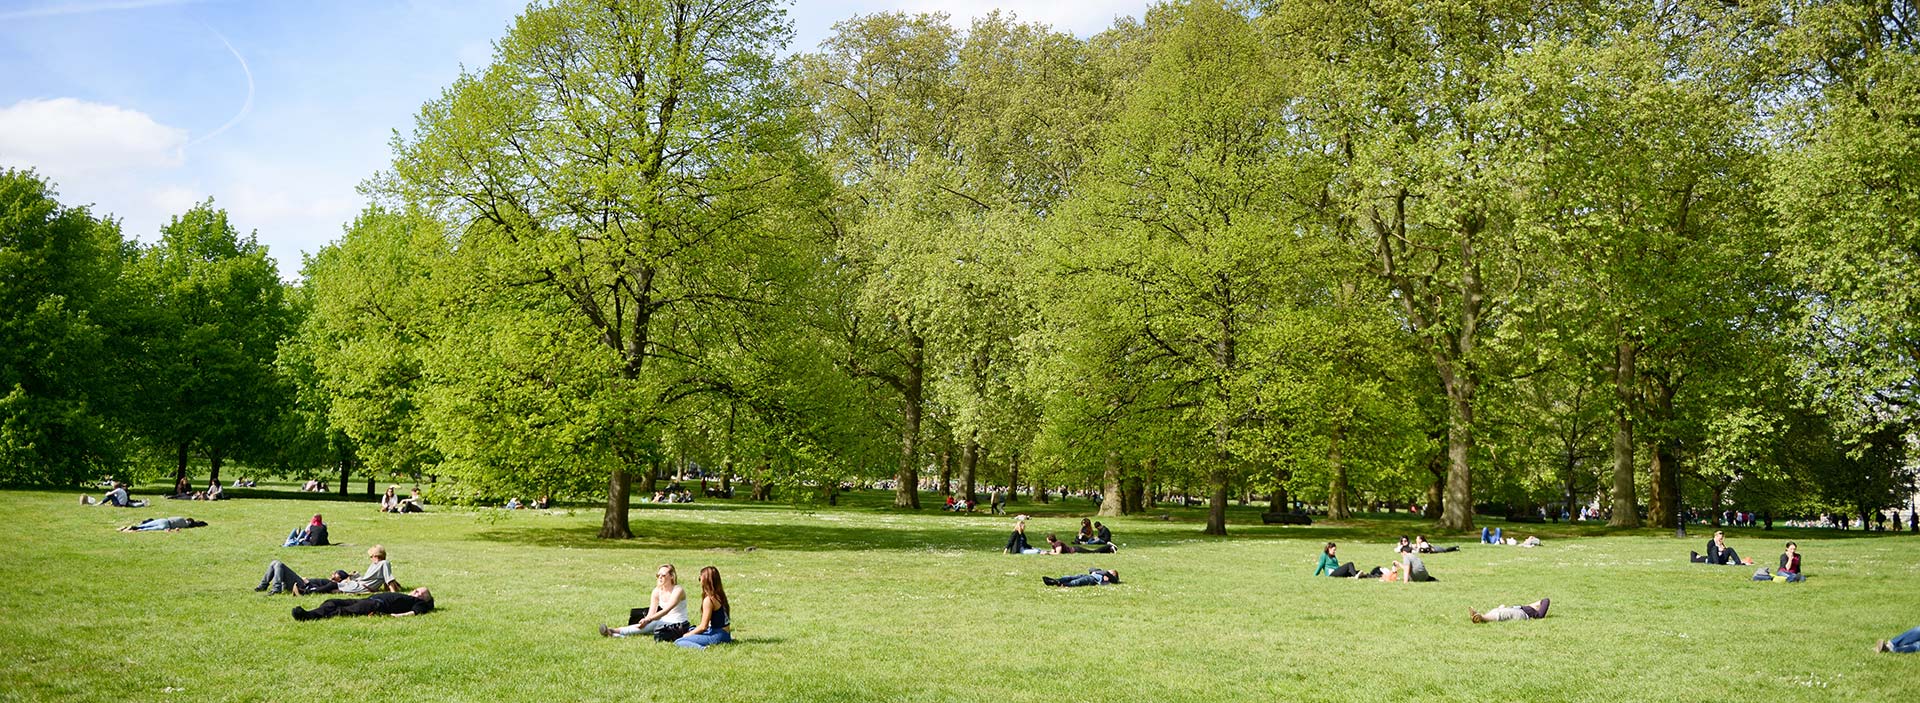 Människor tar paus i en grön park.